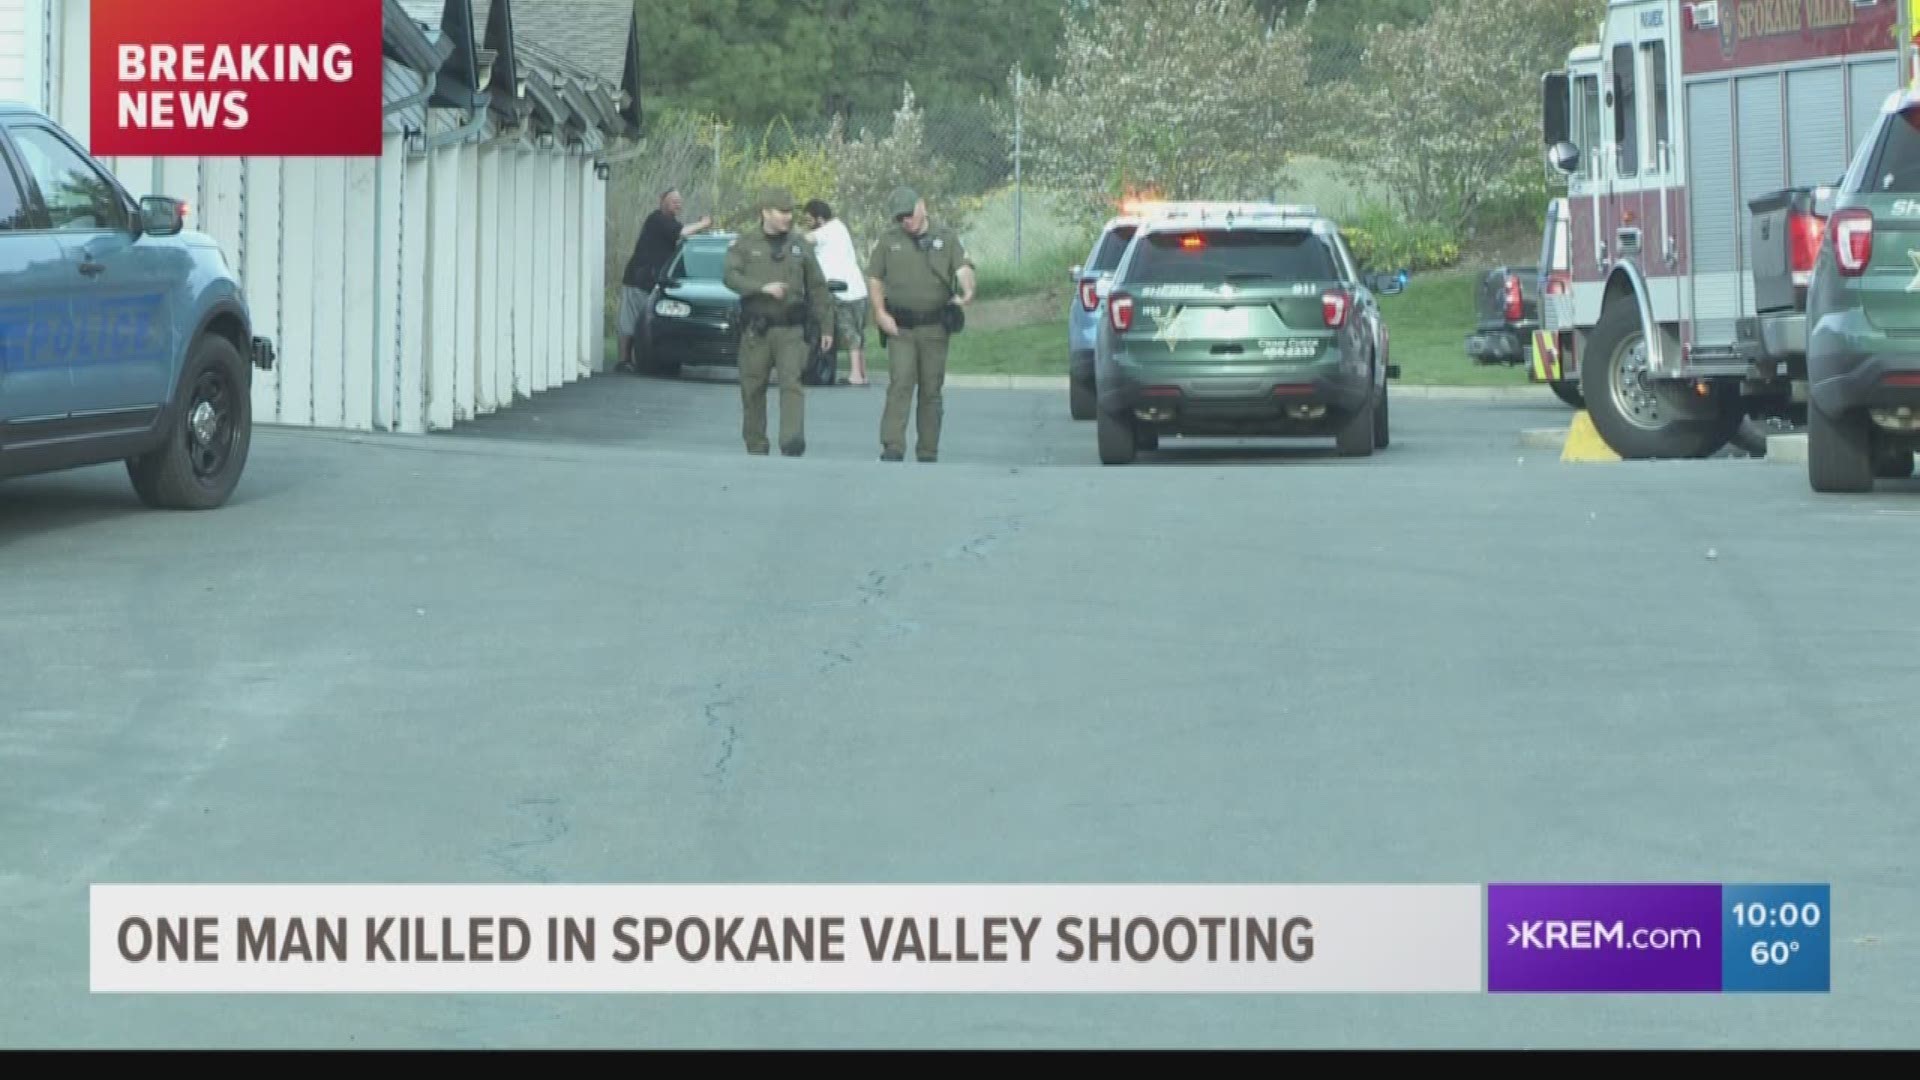 One man killed in Spokane Valley shooting